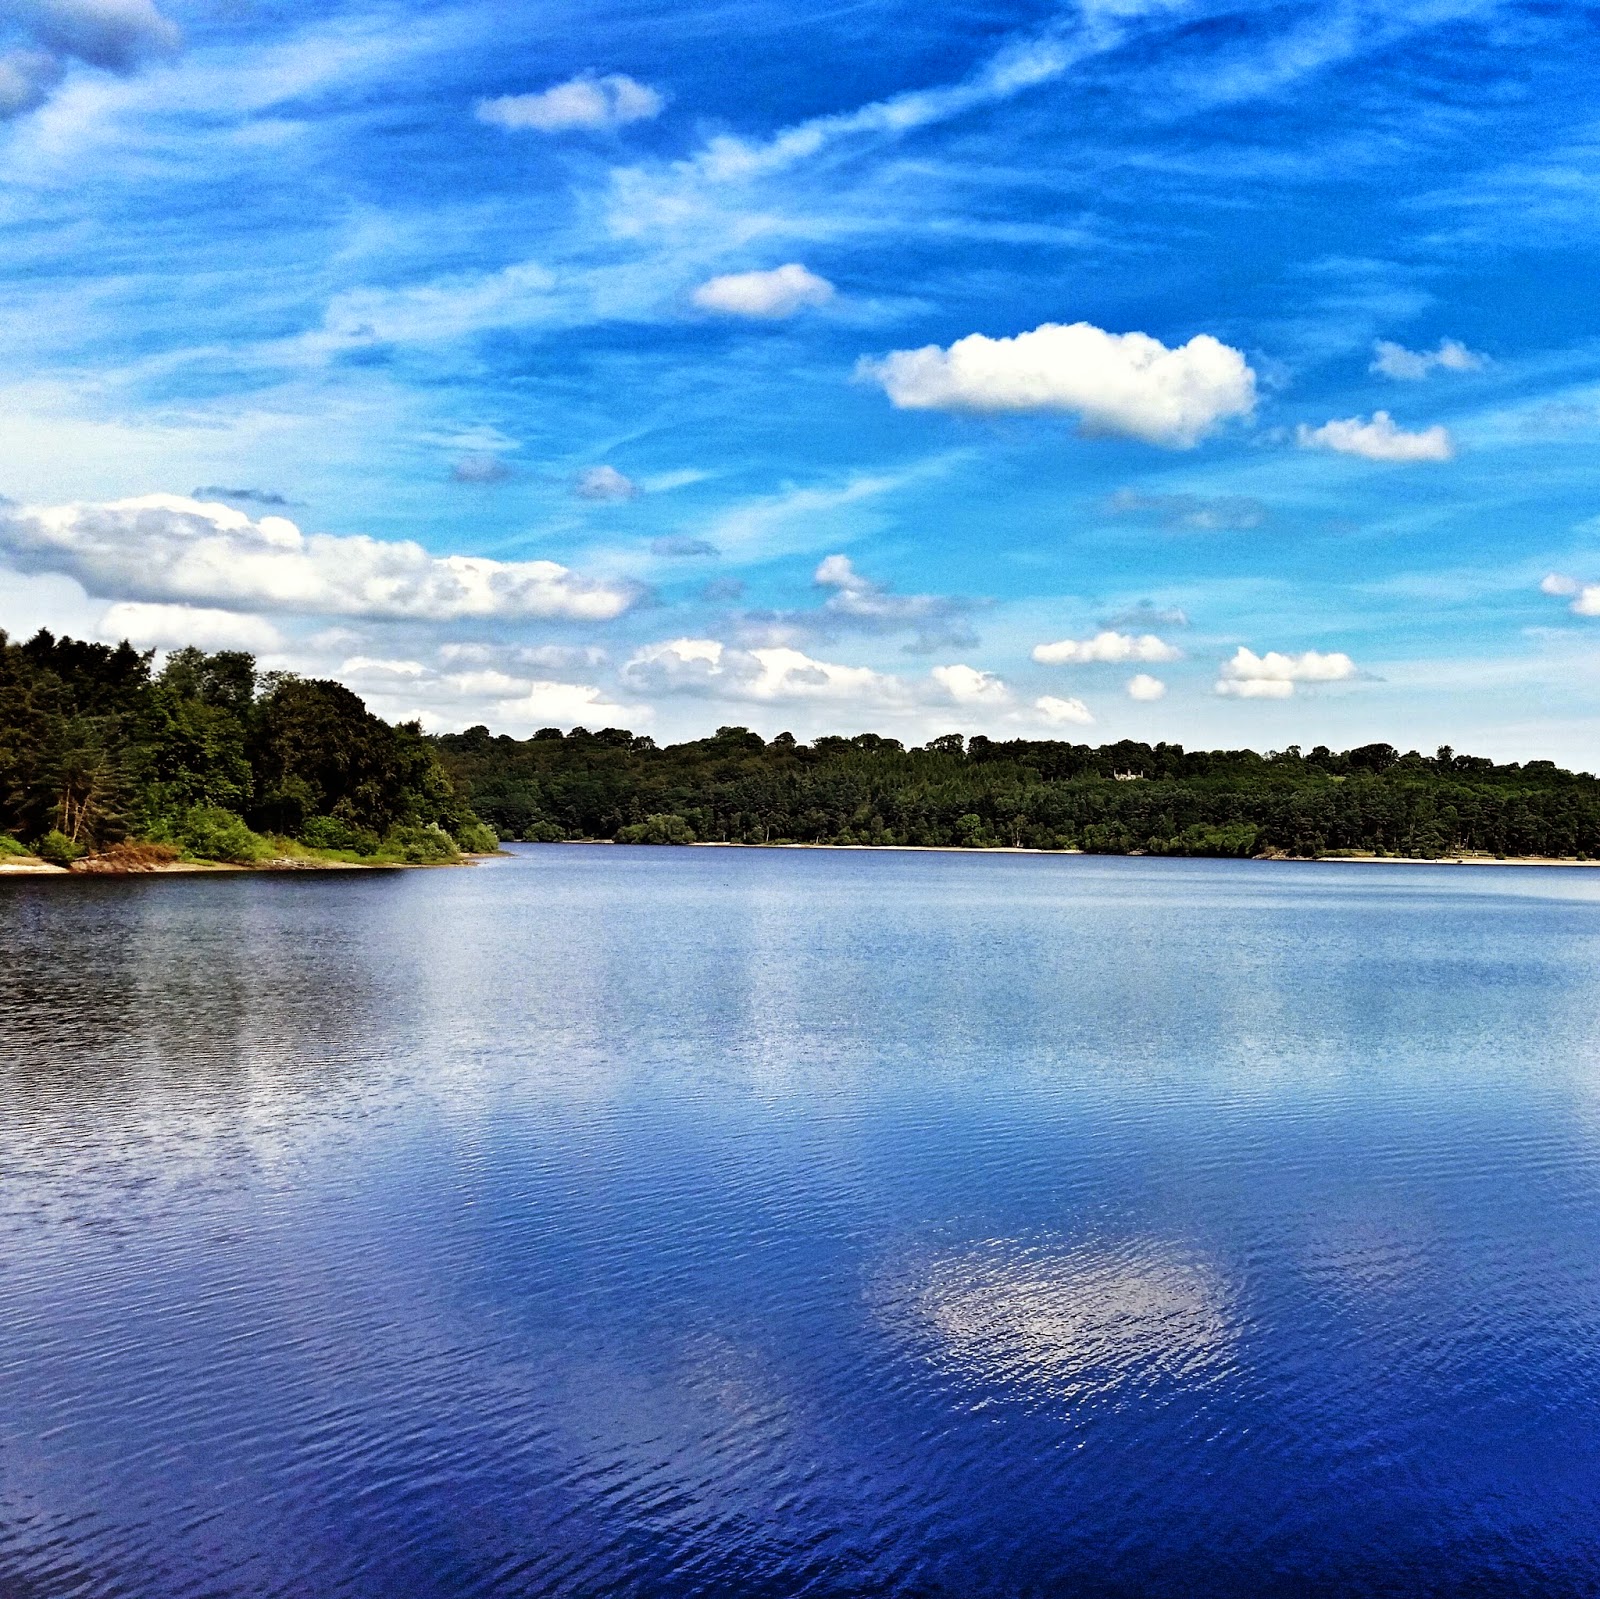 Swintsy reservoir